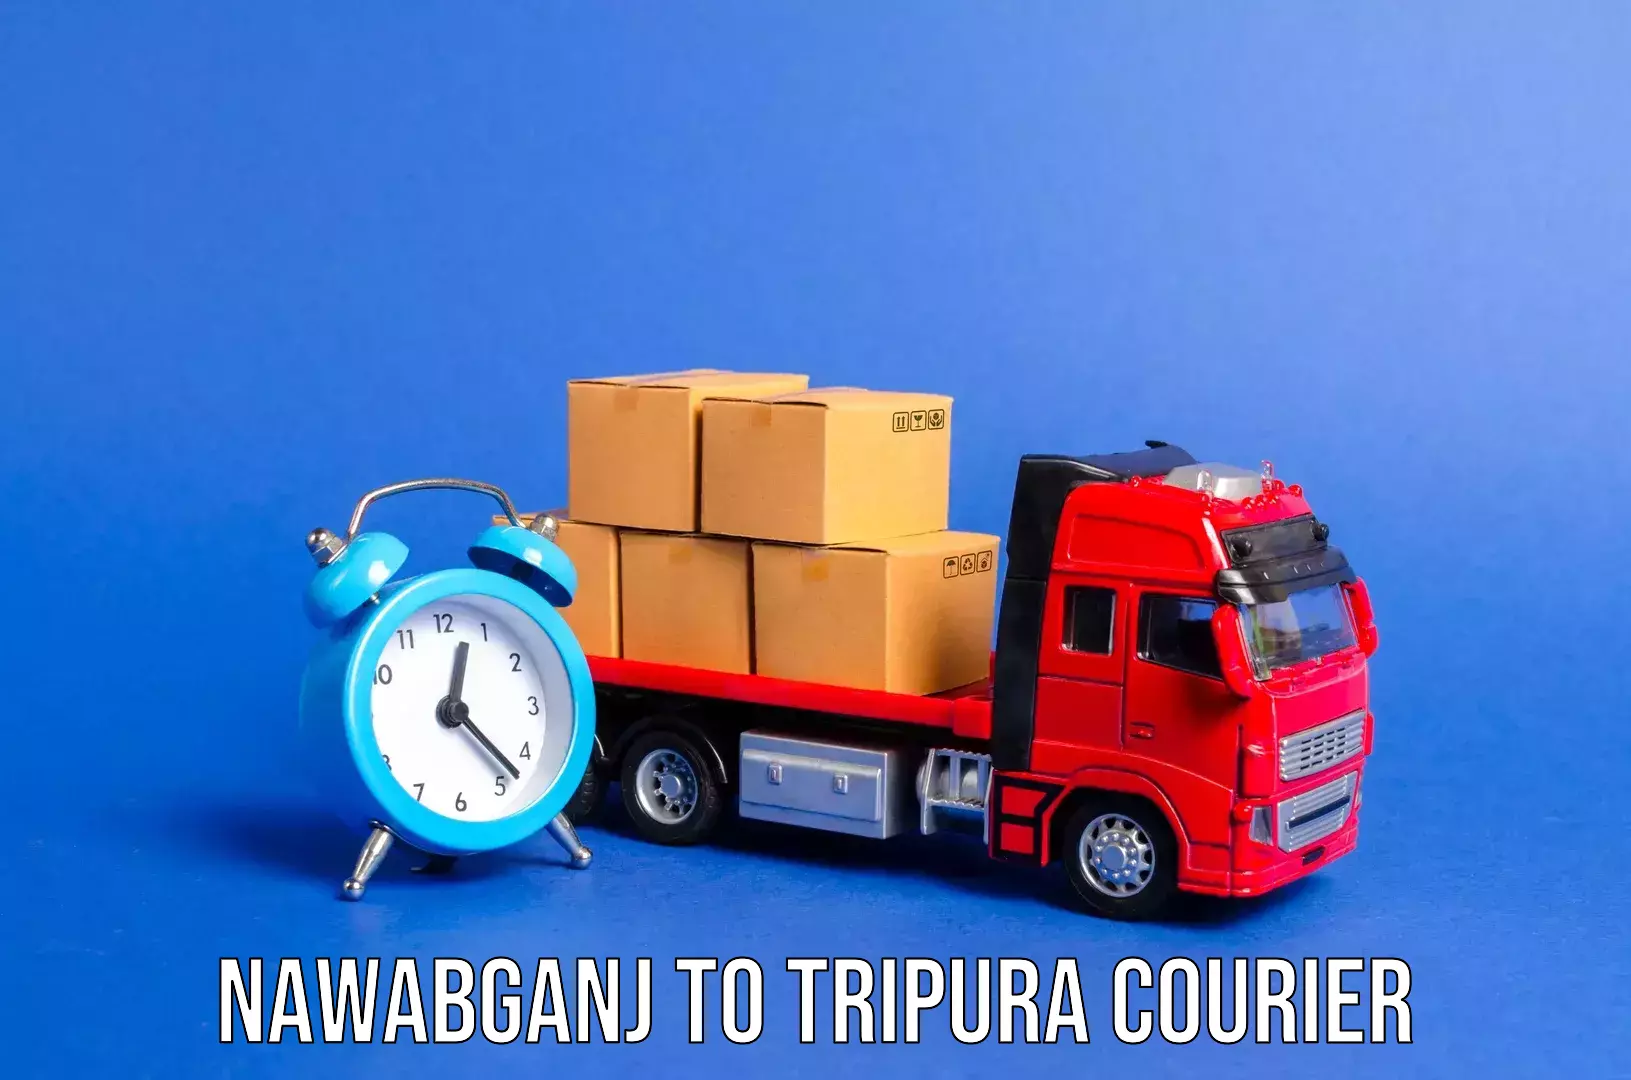 Luggage shipping rates calculator Nawabganj to Tripura